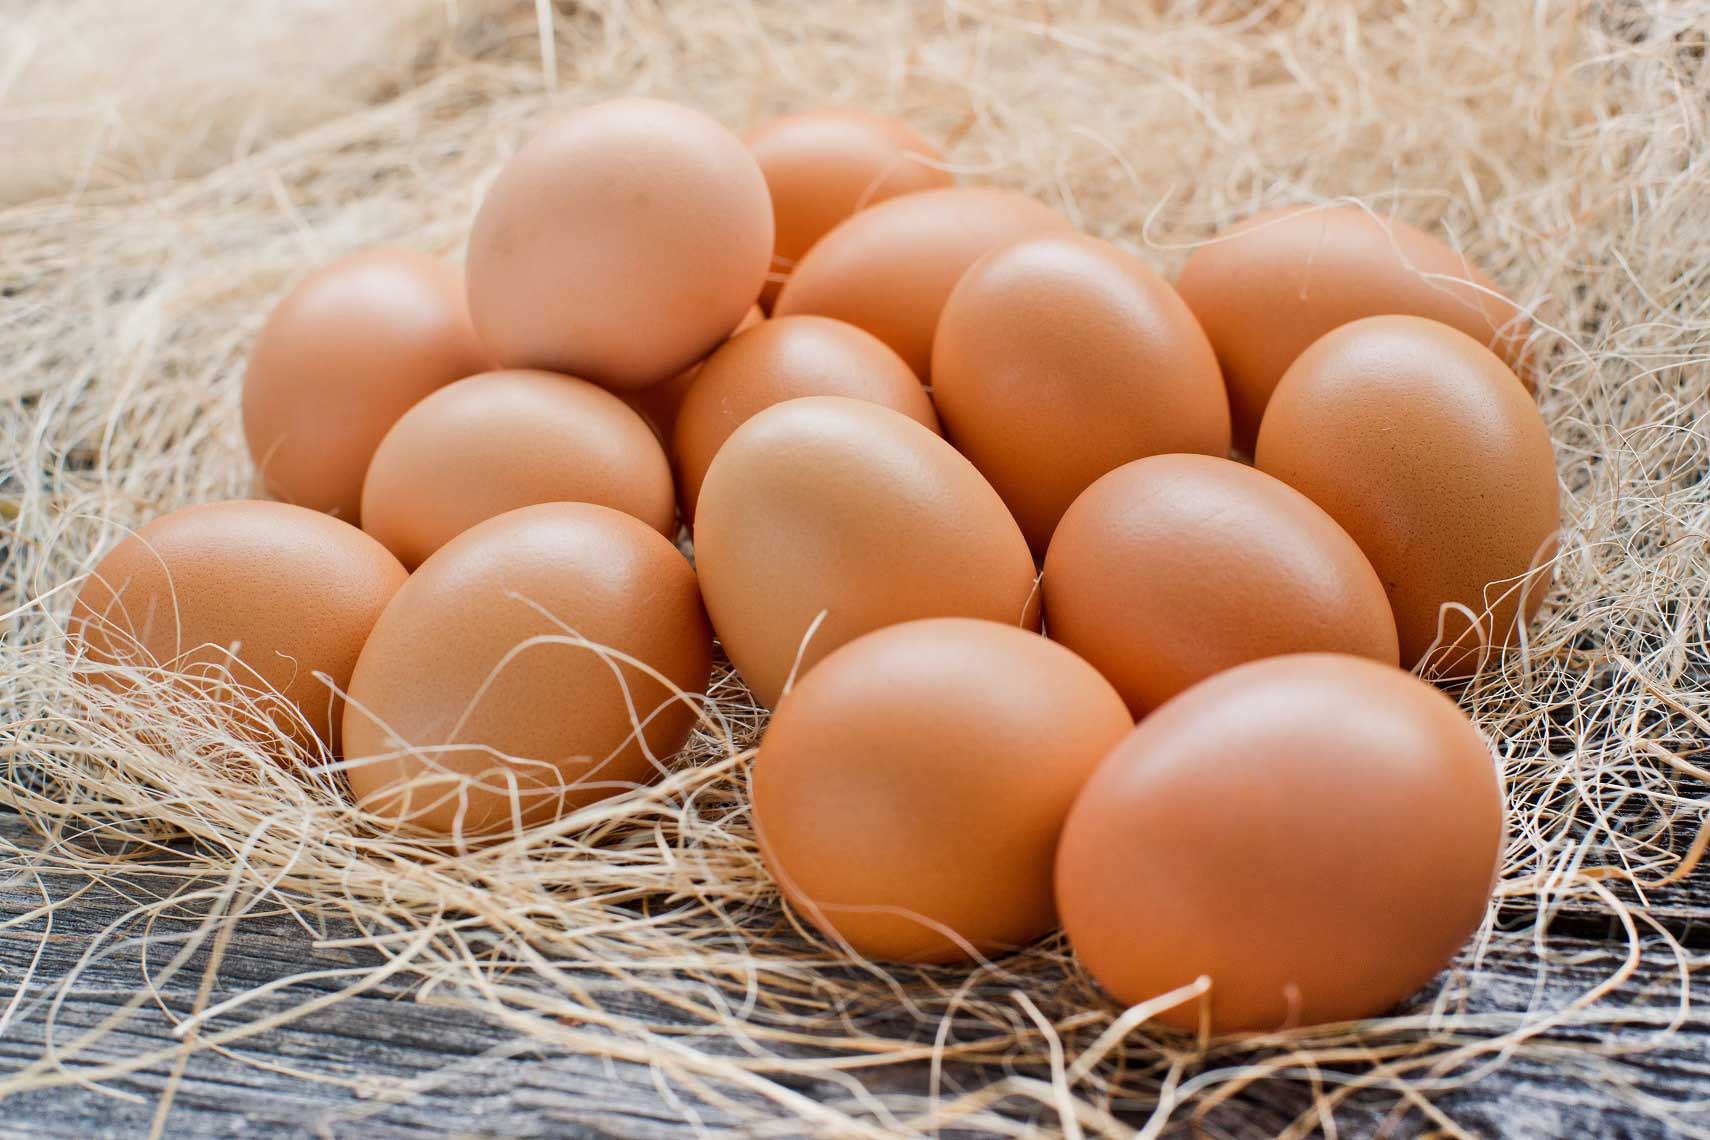 เส้นทางราคาไข่ไก่... ต้องเข้าใจและปล่อยกลไกทำงาน - Charoen Pokphand Foods PCL. All rights reserved.